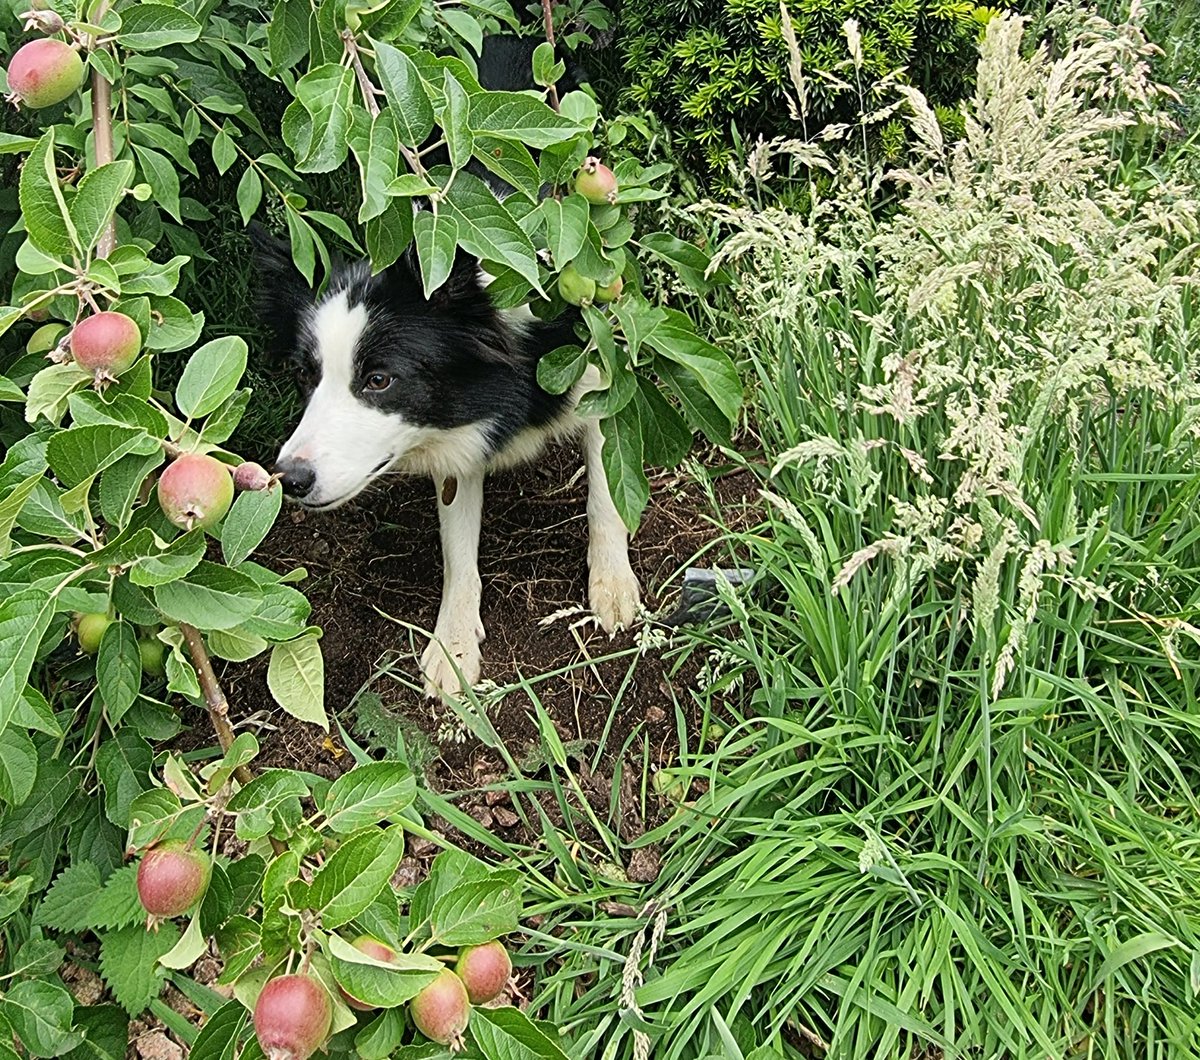 Lola trying to hide behind a fallen apple tree and seek up on Benji

#bordercollie #bordercolliedog #lola #herdingdog #bordercollielife #bordercollielove #playfulpup #hideandseek #appletree